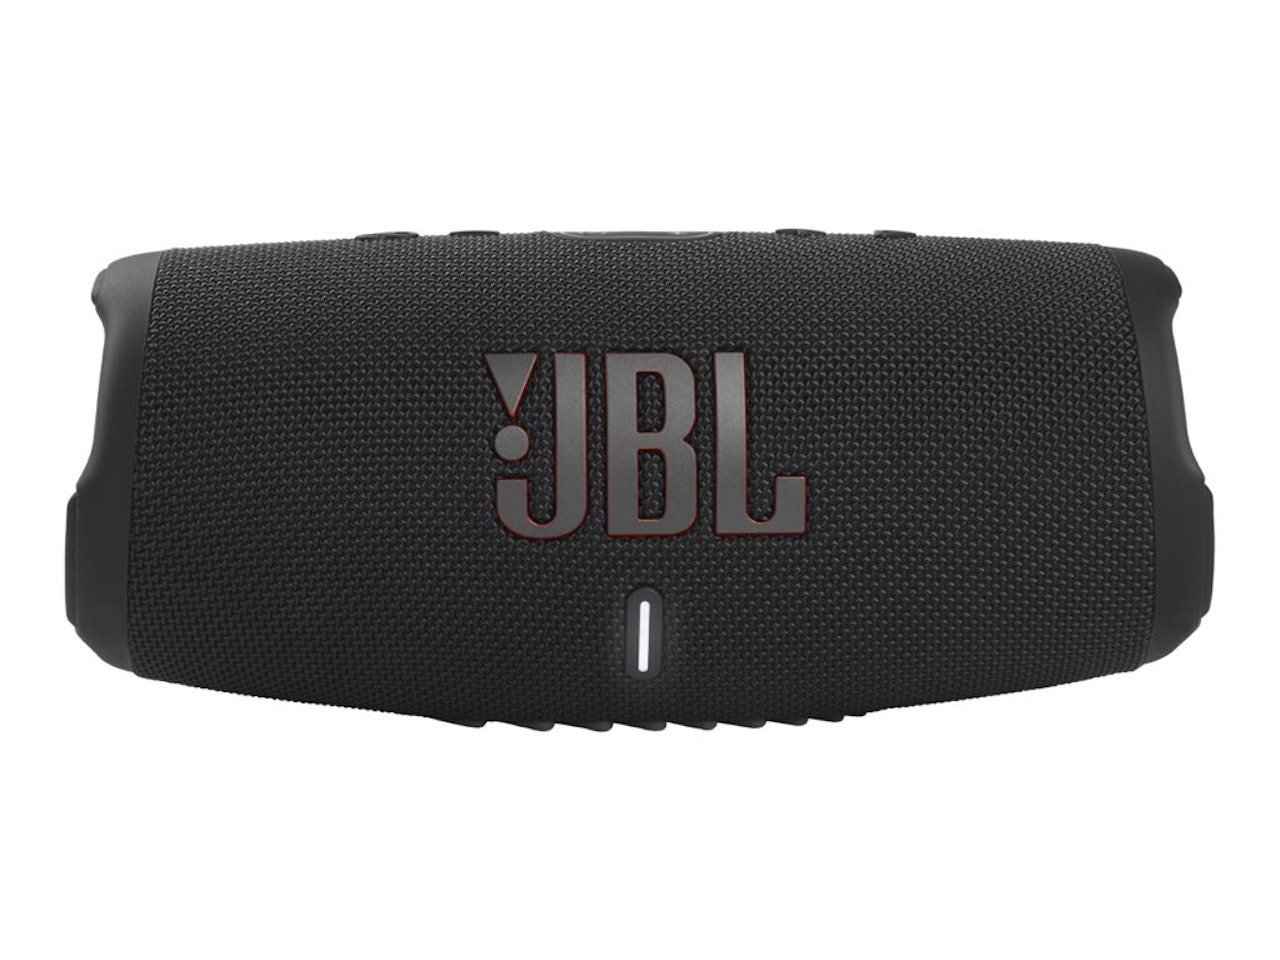 JBL Charge 5 - Svart